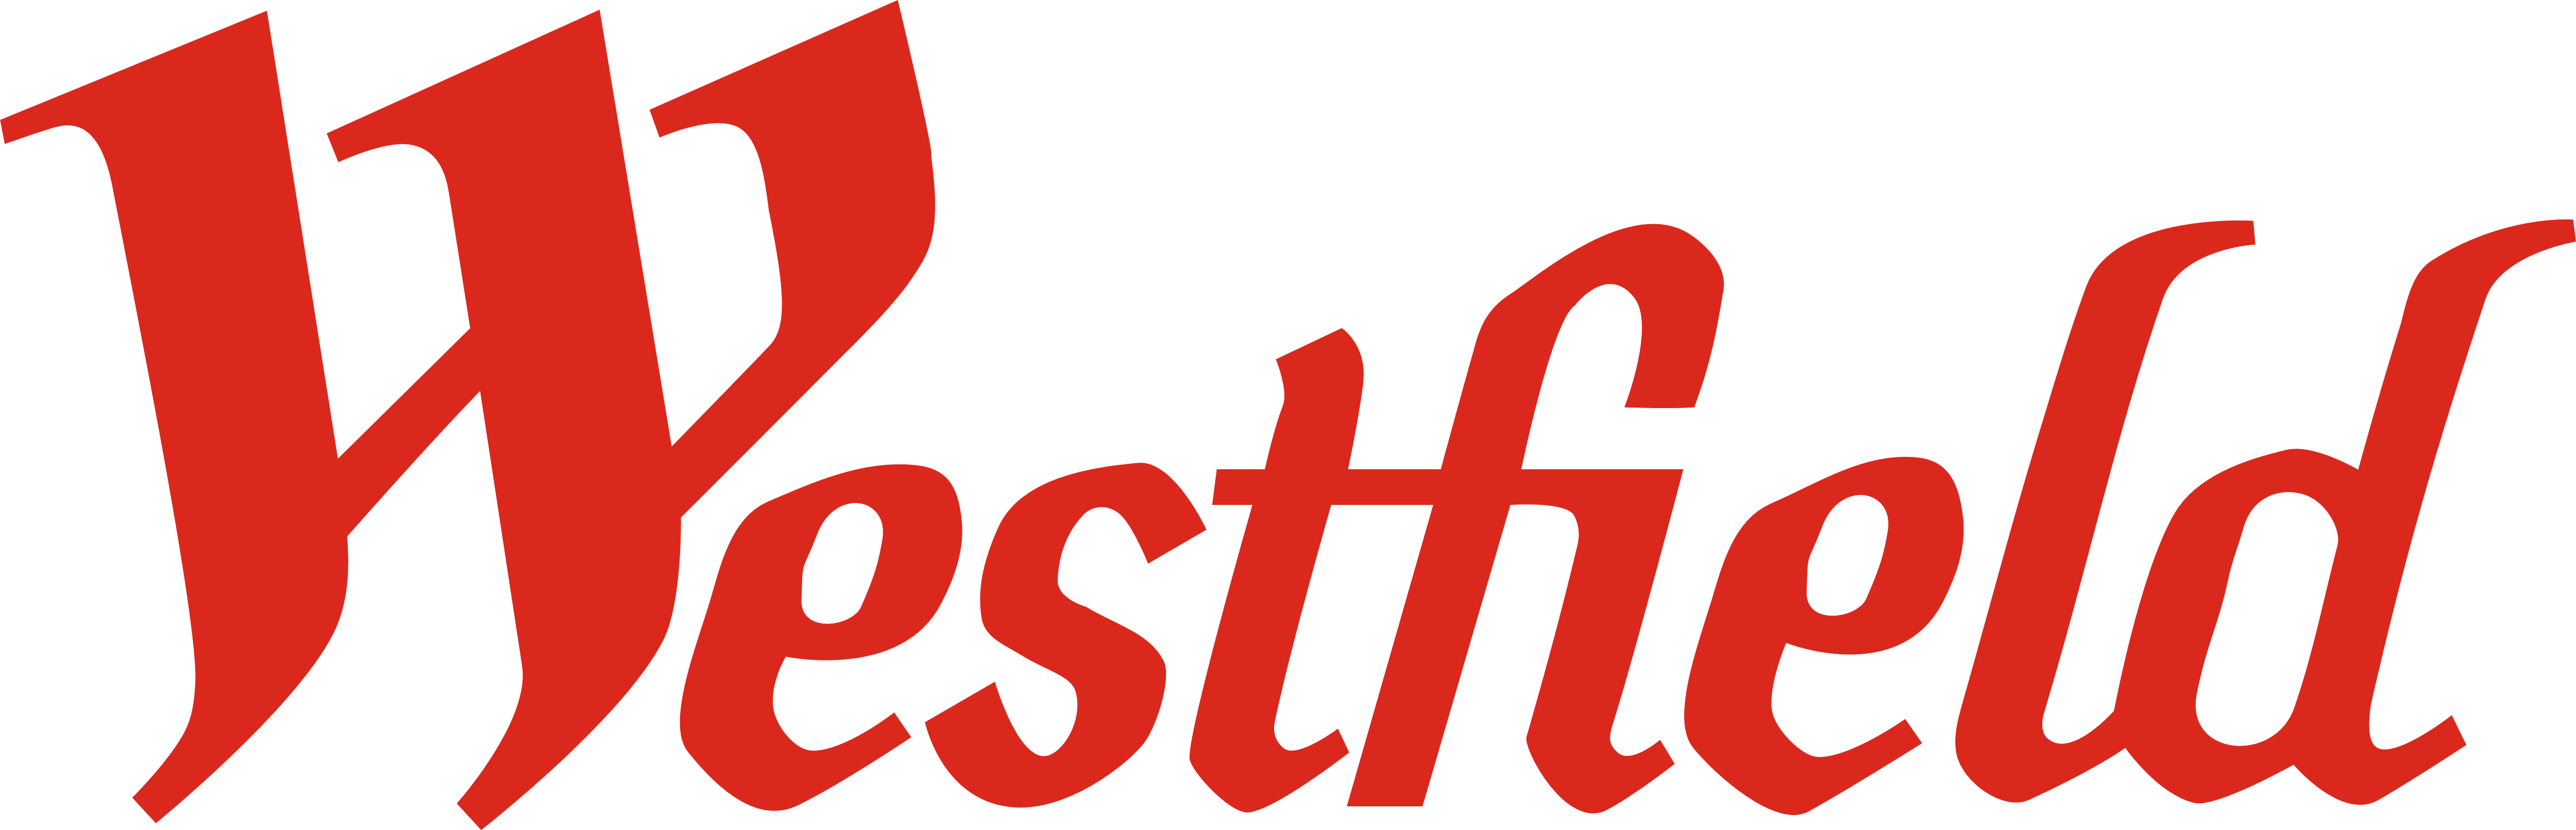 Westfield_logo